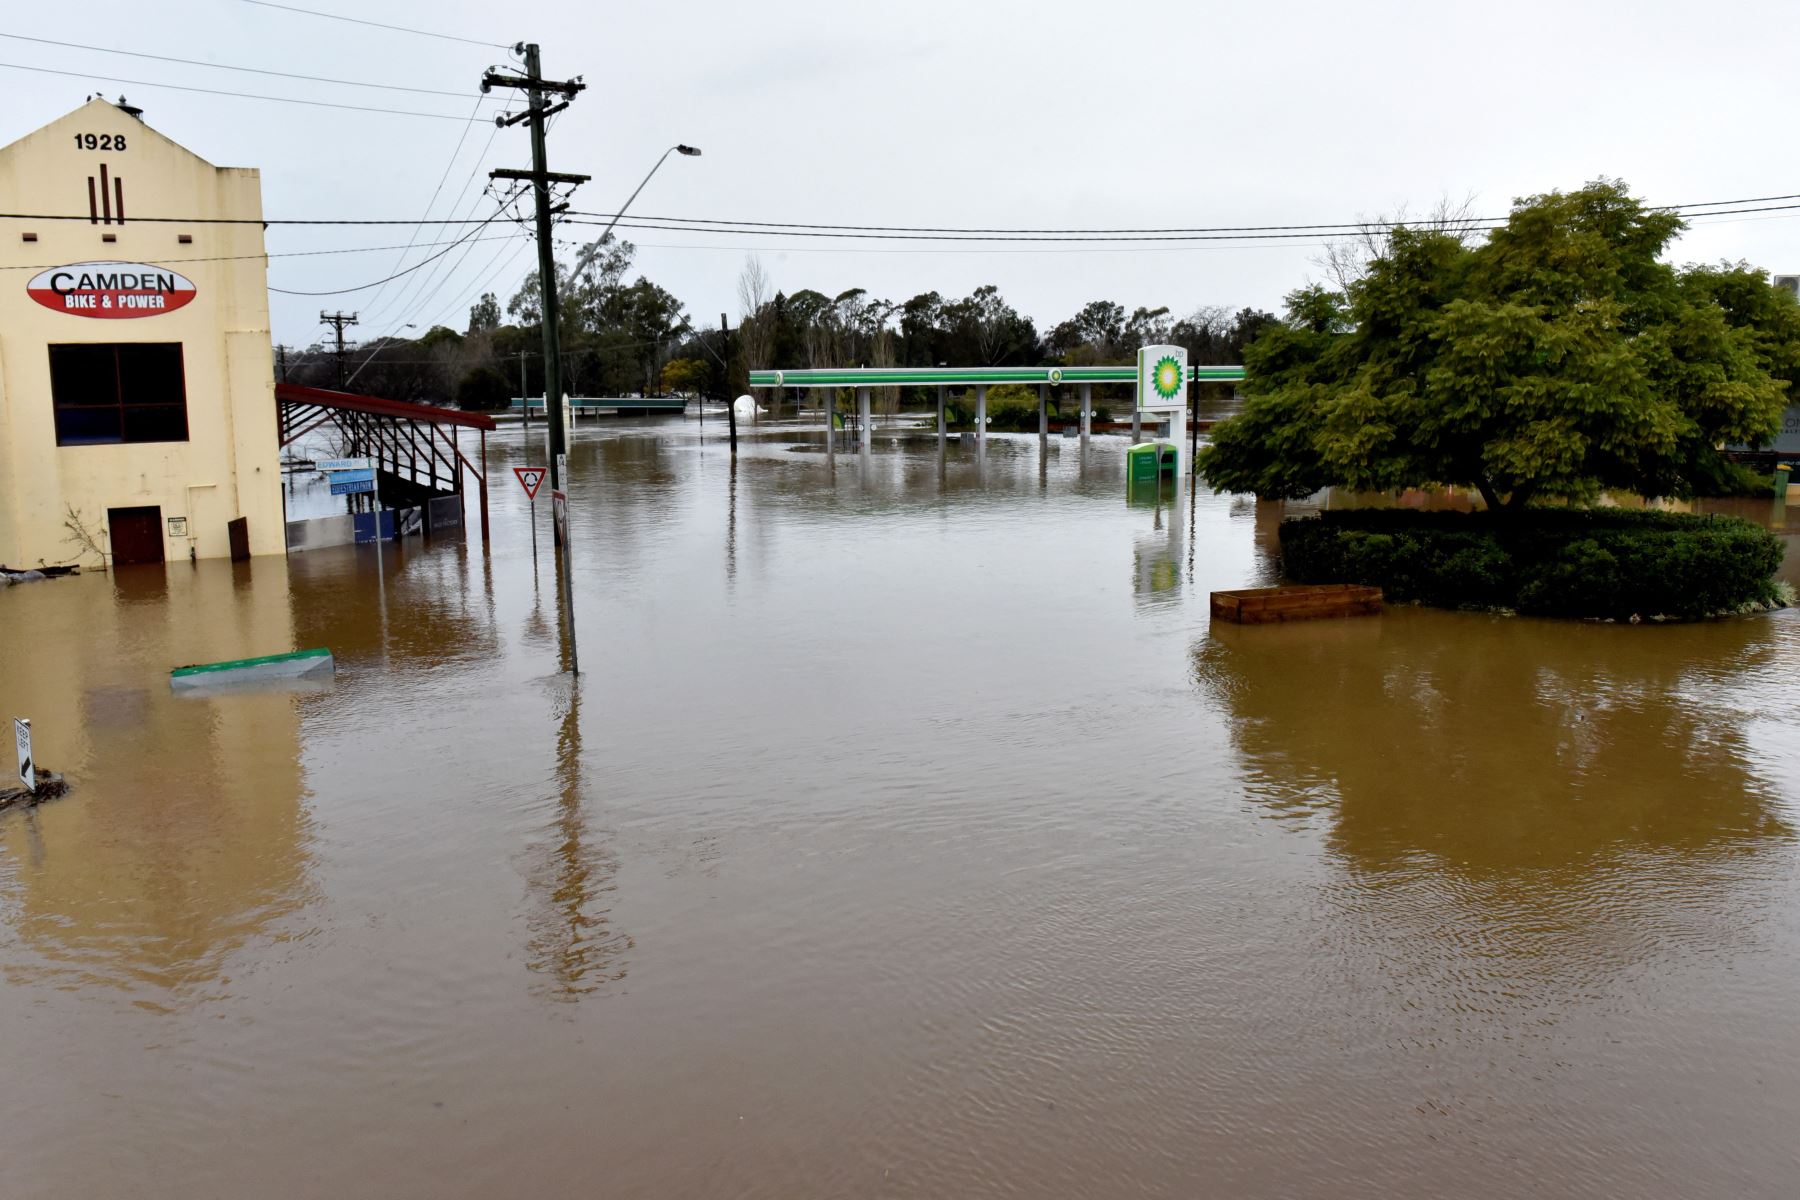 Una vista general muestra las calles inundadas debido a las lluvias torrenciales en el suburbio de Camden en Sydney.
Foto: AFP